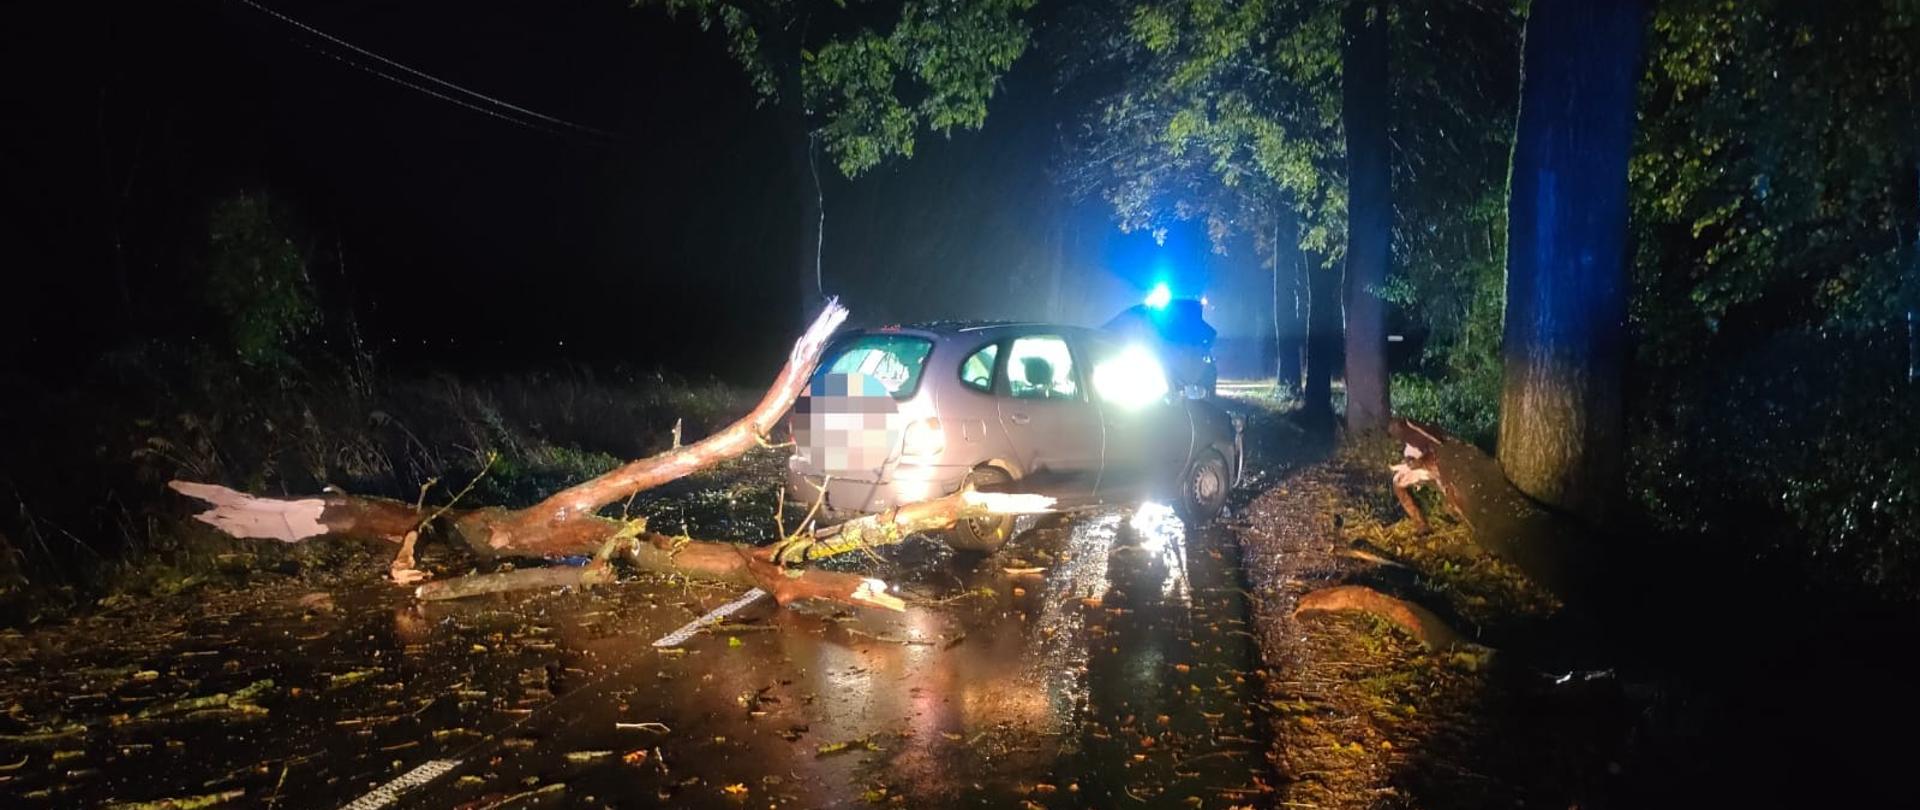 Na zdjęciu widać rozbity samochód osobowy stojący na jezdni. Za samochodem leży ułamany konar. Na jezdni leżą gałęzie. W tle widać samochód strażacki z włączonymi niebieskimi światłami, drzewa oraz zarośla. Jest ciemno.